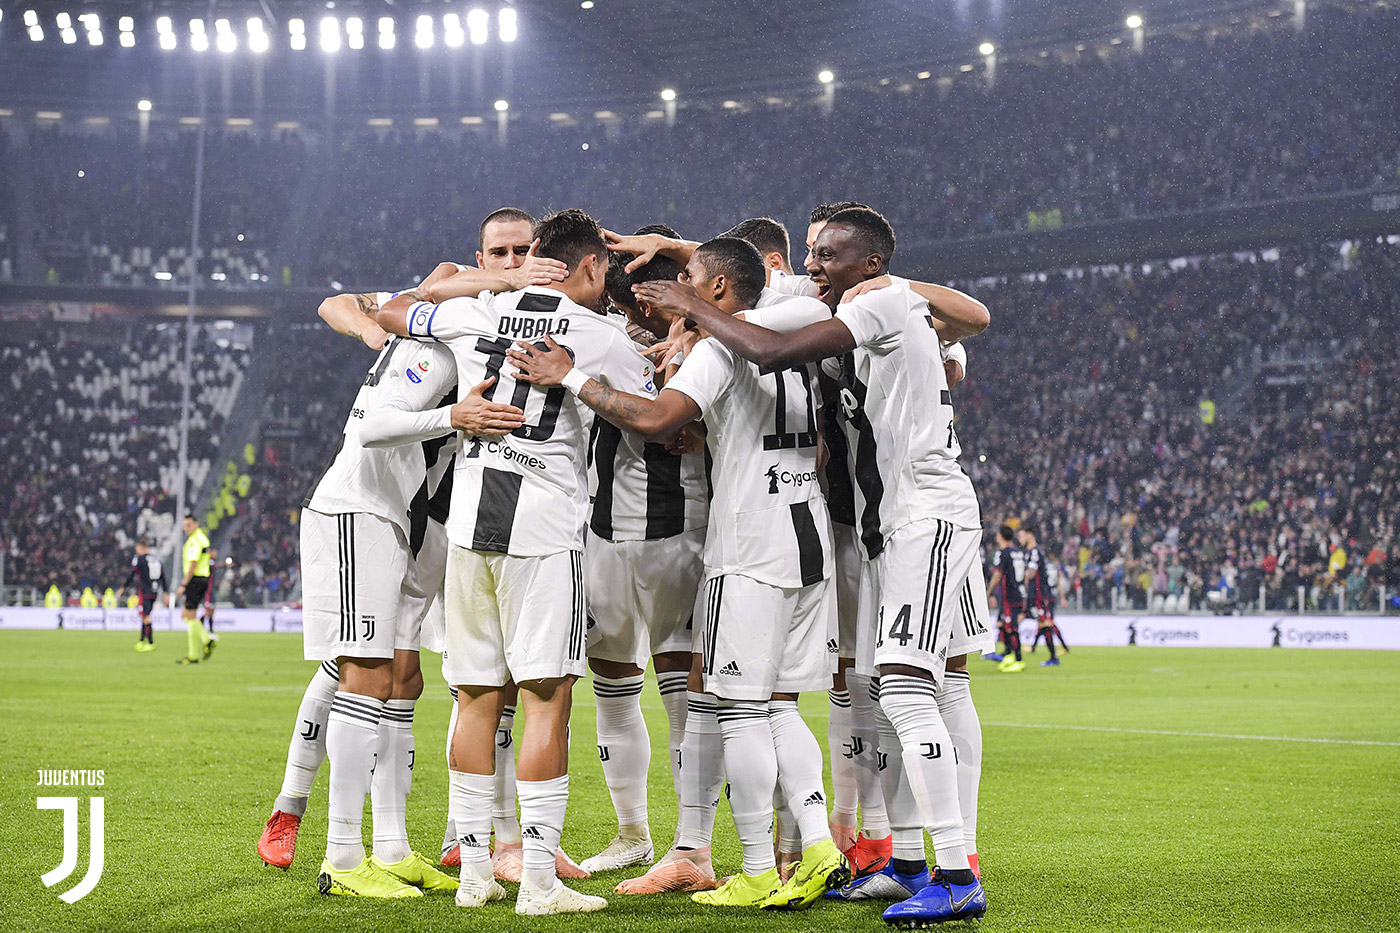 Crise : La Juventus a perdu des grosses sommes